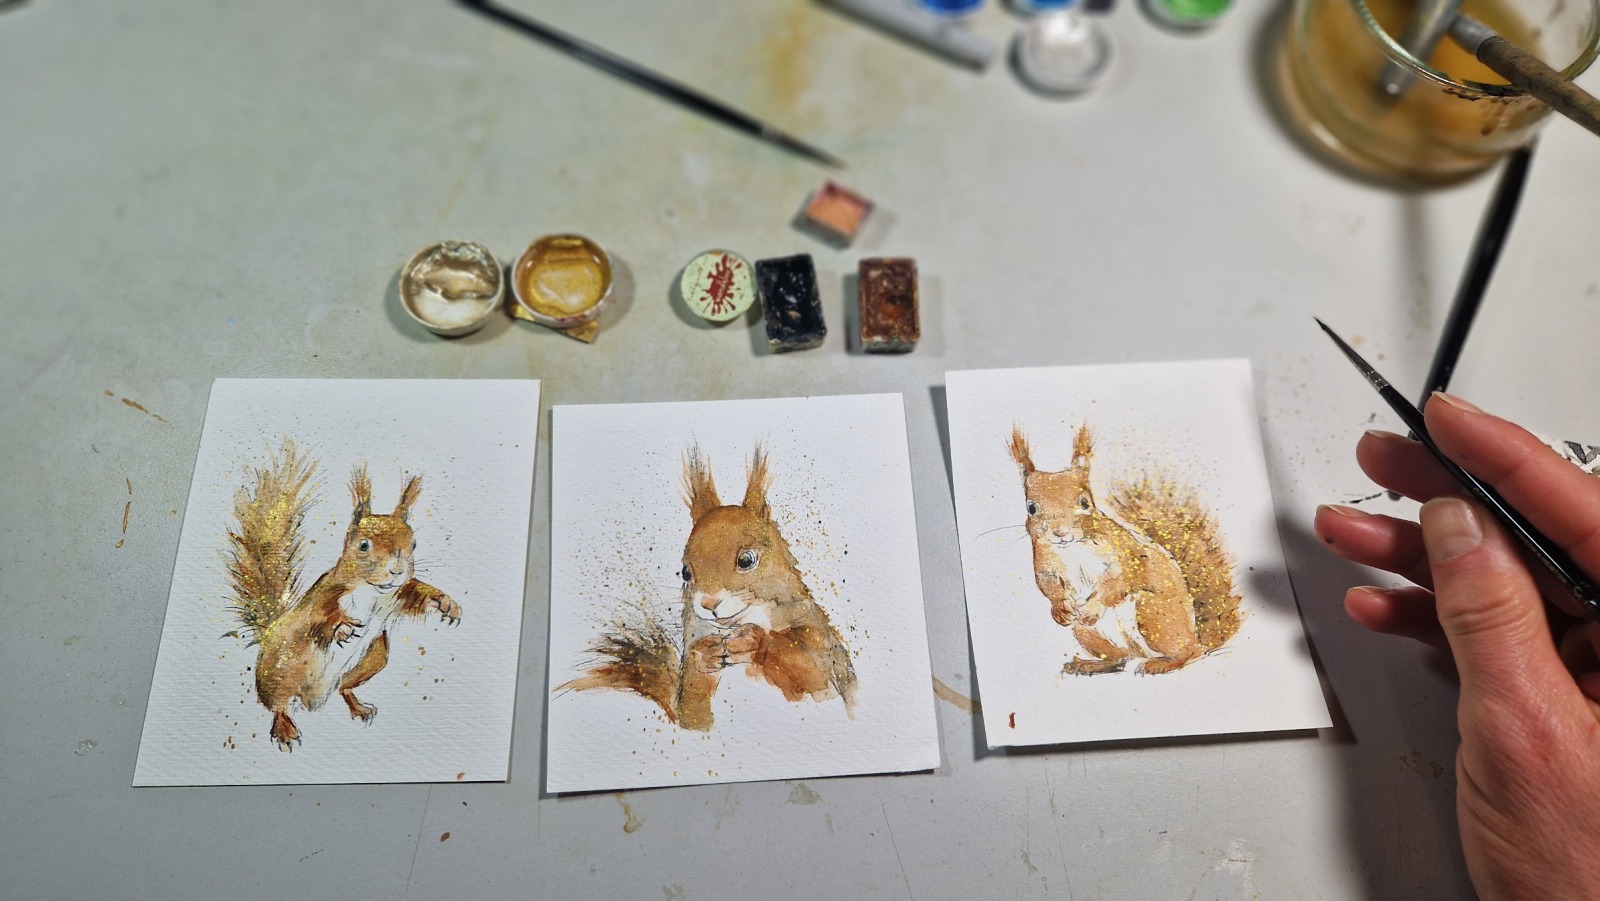 Eichhörnchen, Illustration handgemalt, gerahmt in Minirahmen, Rahmenfarbe wählbar schwarz oder